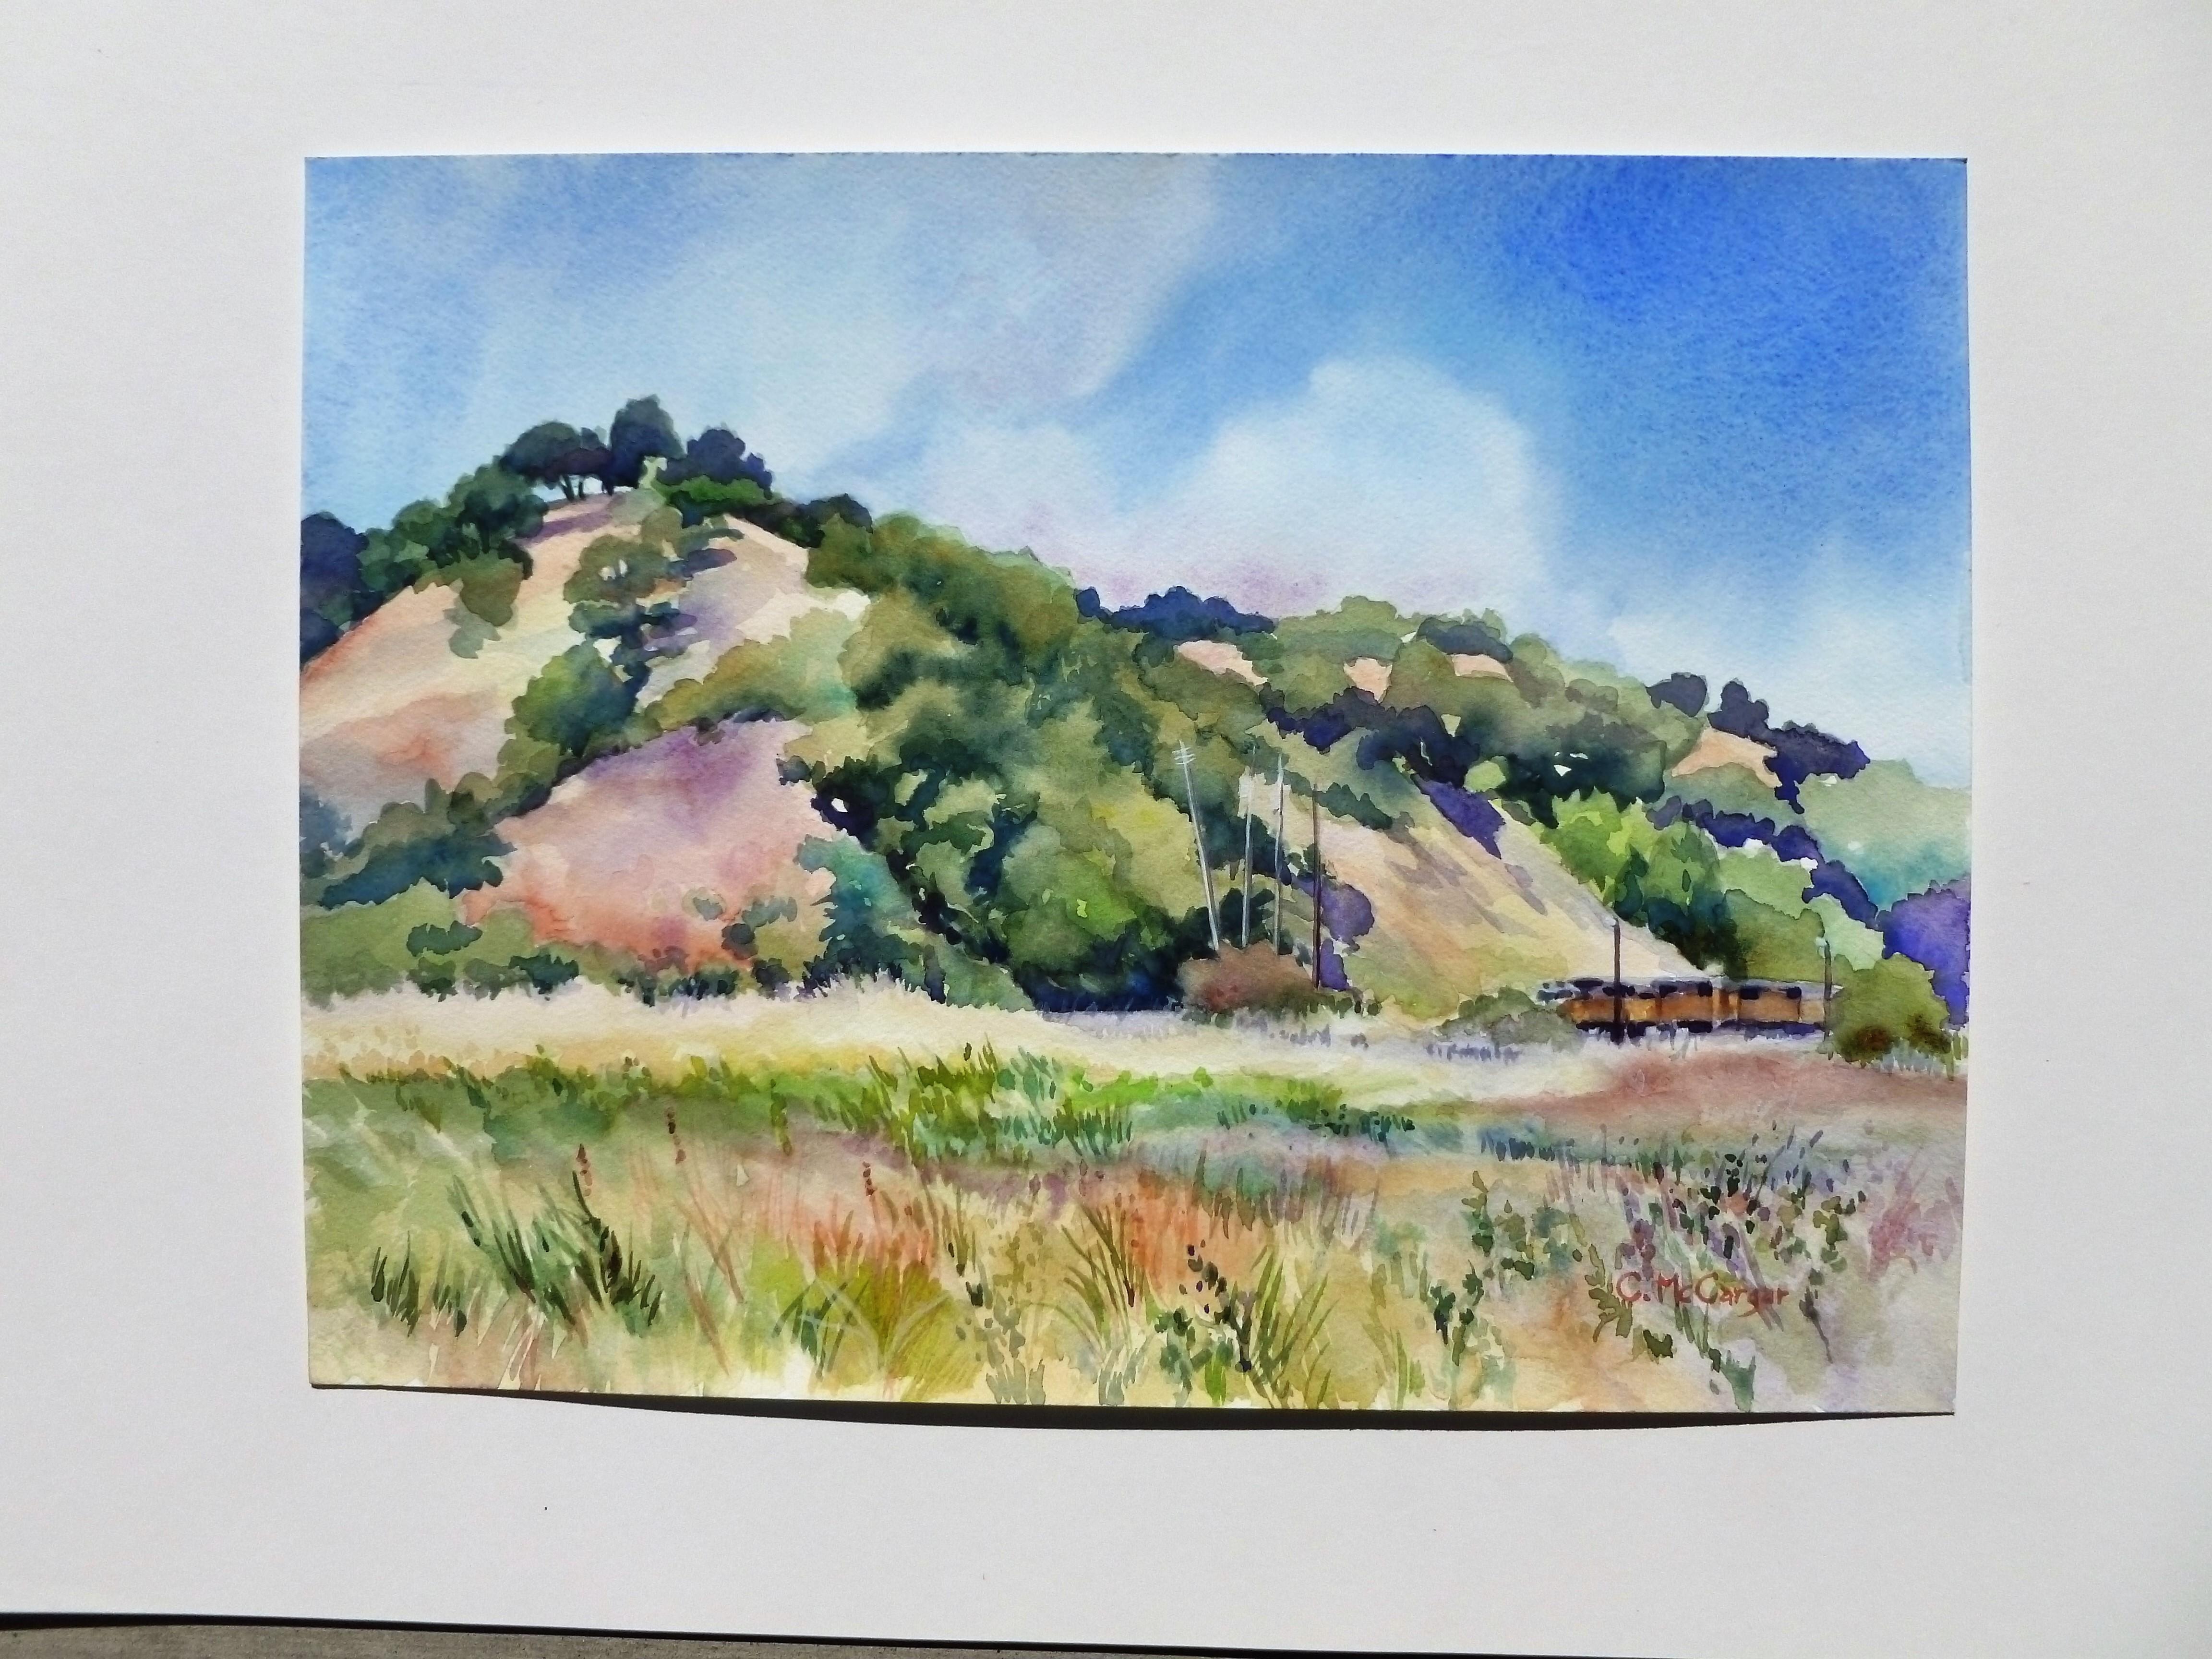 <p>Kommentare des Künstlers<br />Dies ist ein Gemälde, das ich en plein air gemalt habe. Es zeigt meinen Eindruck von Gräsern am Ufer und fernen Hügeln, mit der Faszination eines vorbeifahrenden Zuges, der gerade in Sichtweite ist.</p><p>Über die